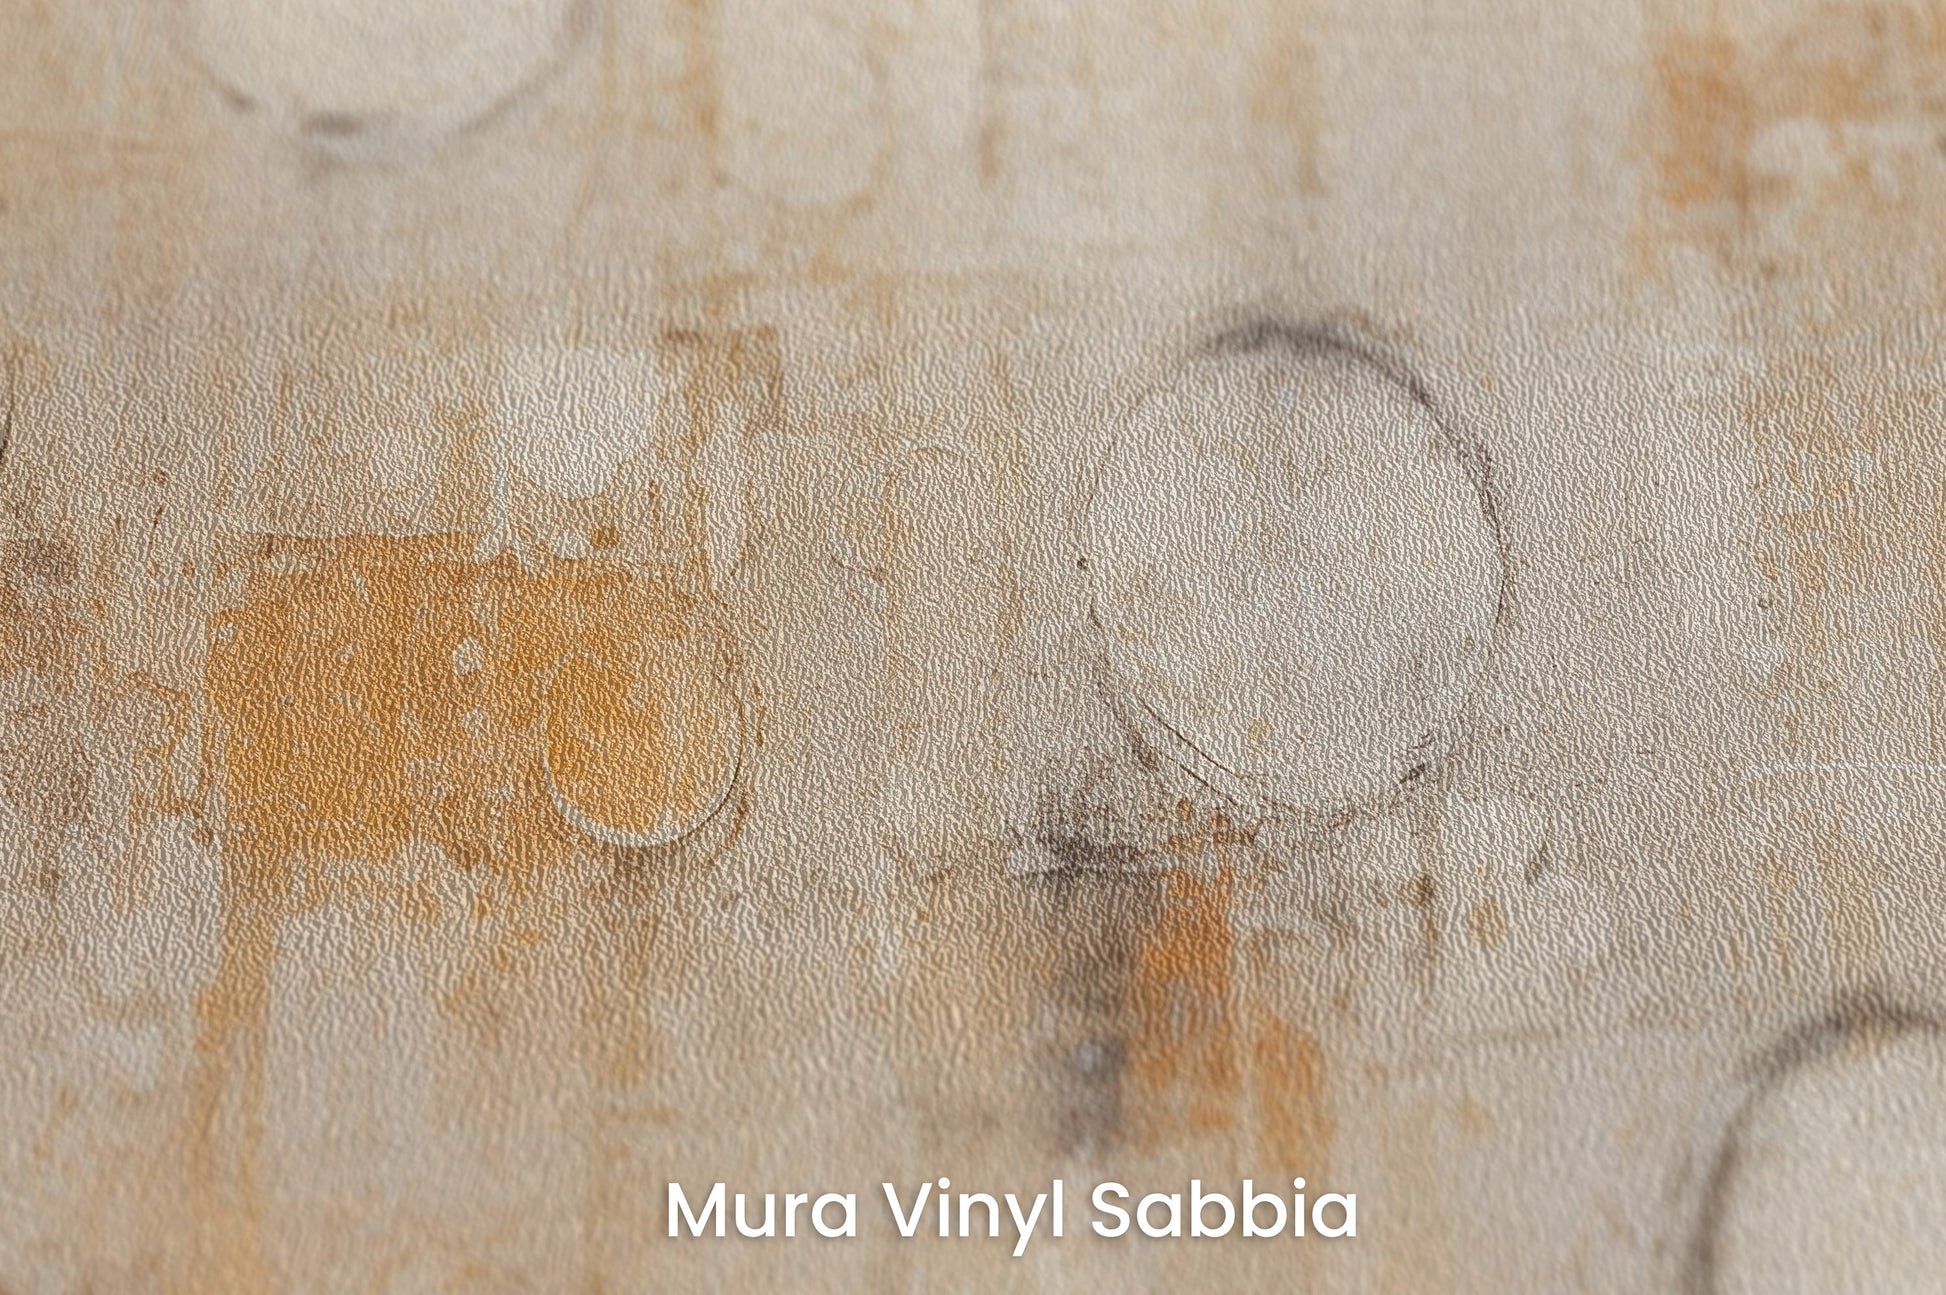 Zbliżenie na artystyczną fototapetę o nazwie RUSTIC ORBITAL IMPRESSIONS na podłożu Mura Vinyl Sabbia struktura grubego ziarna piasku.